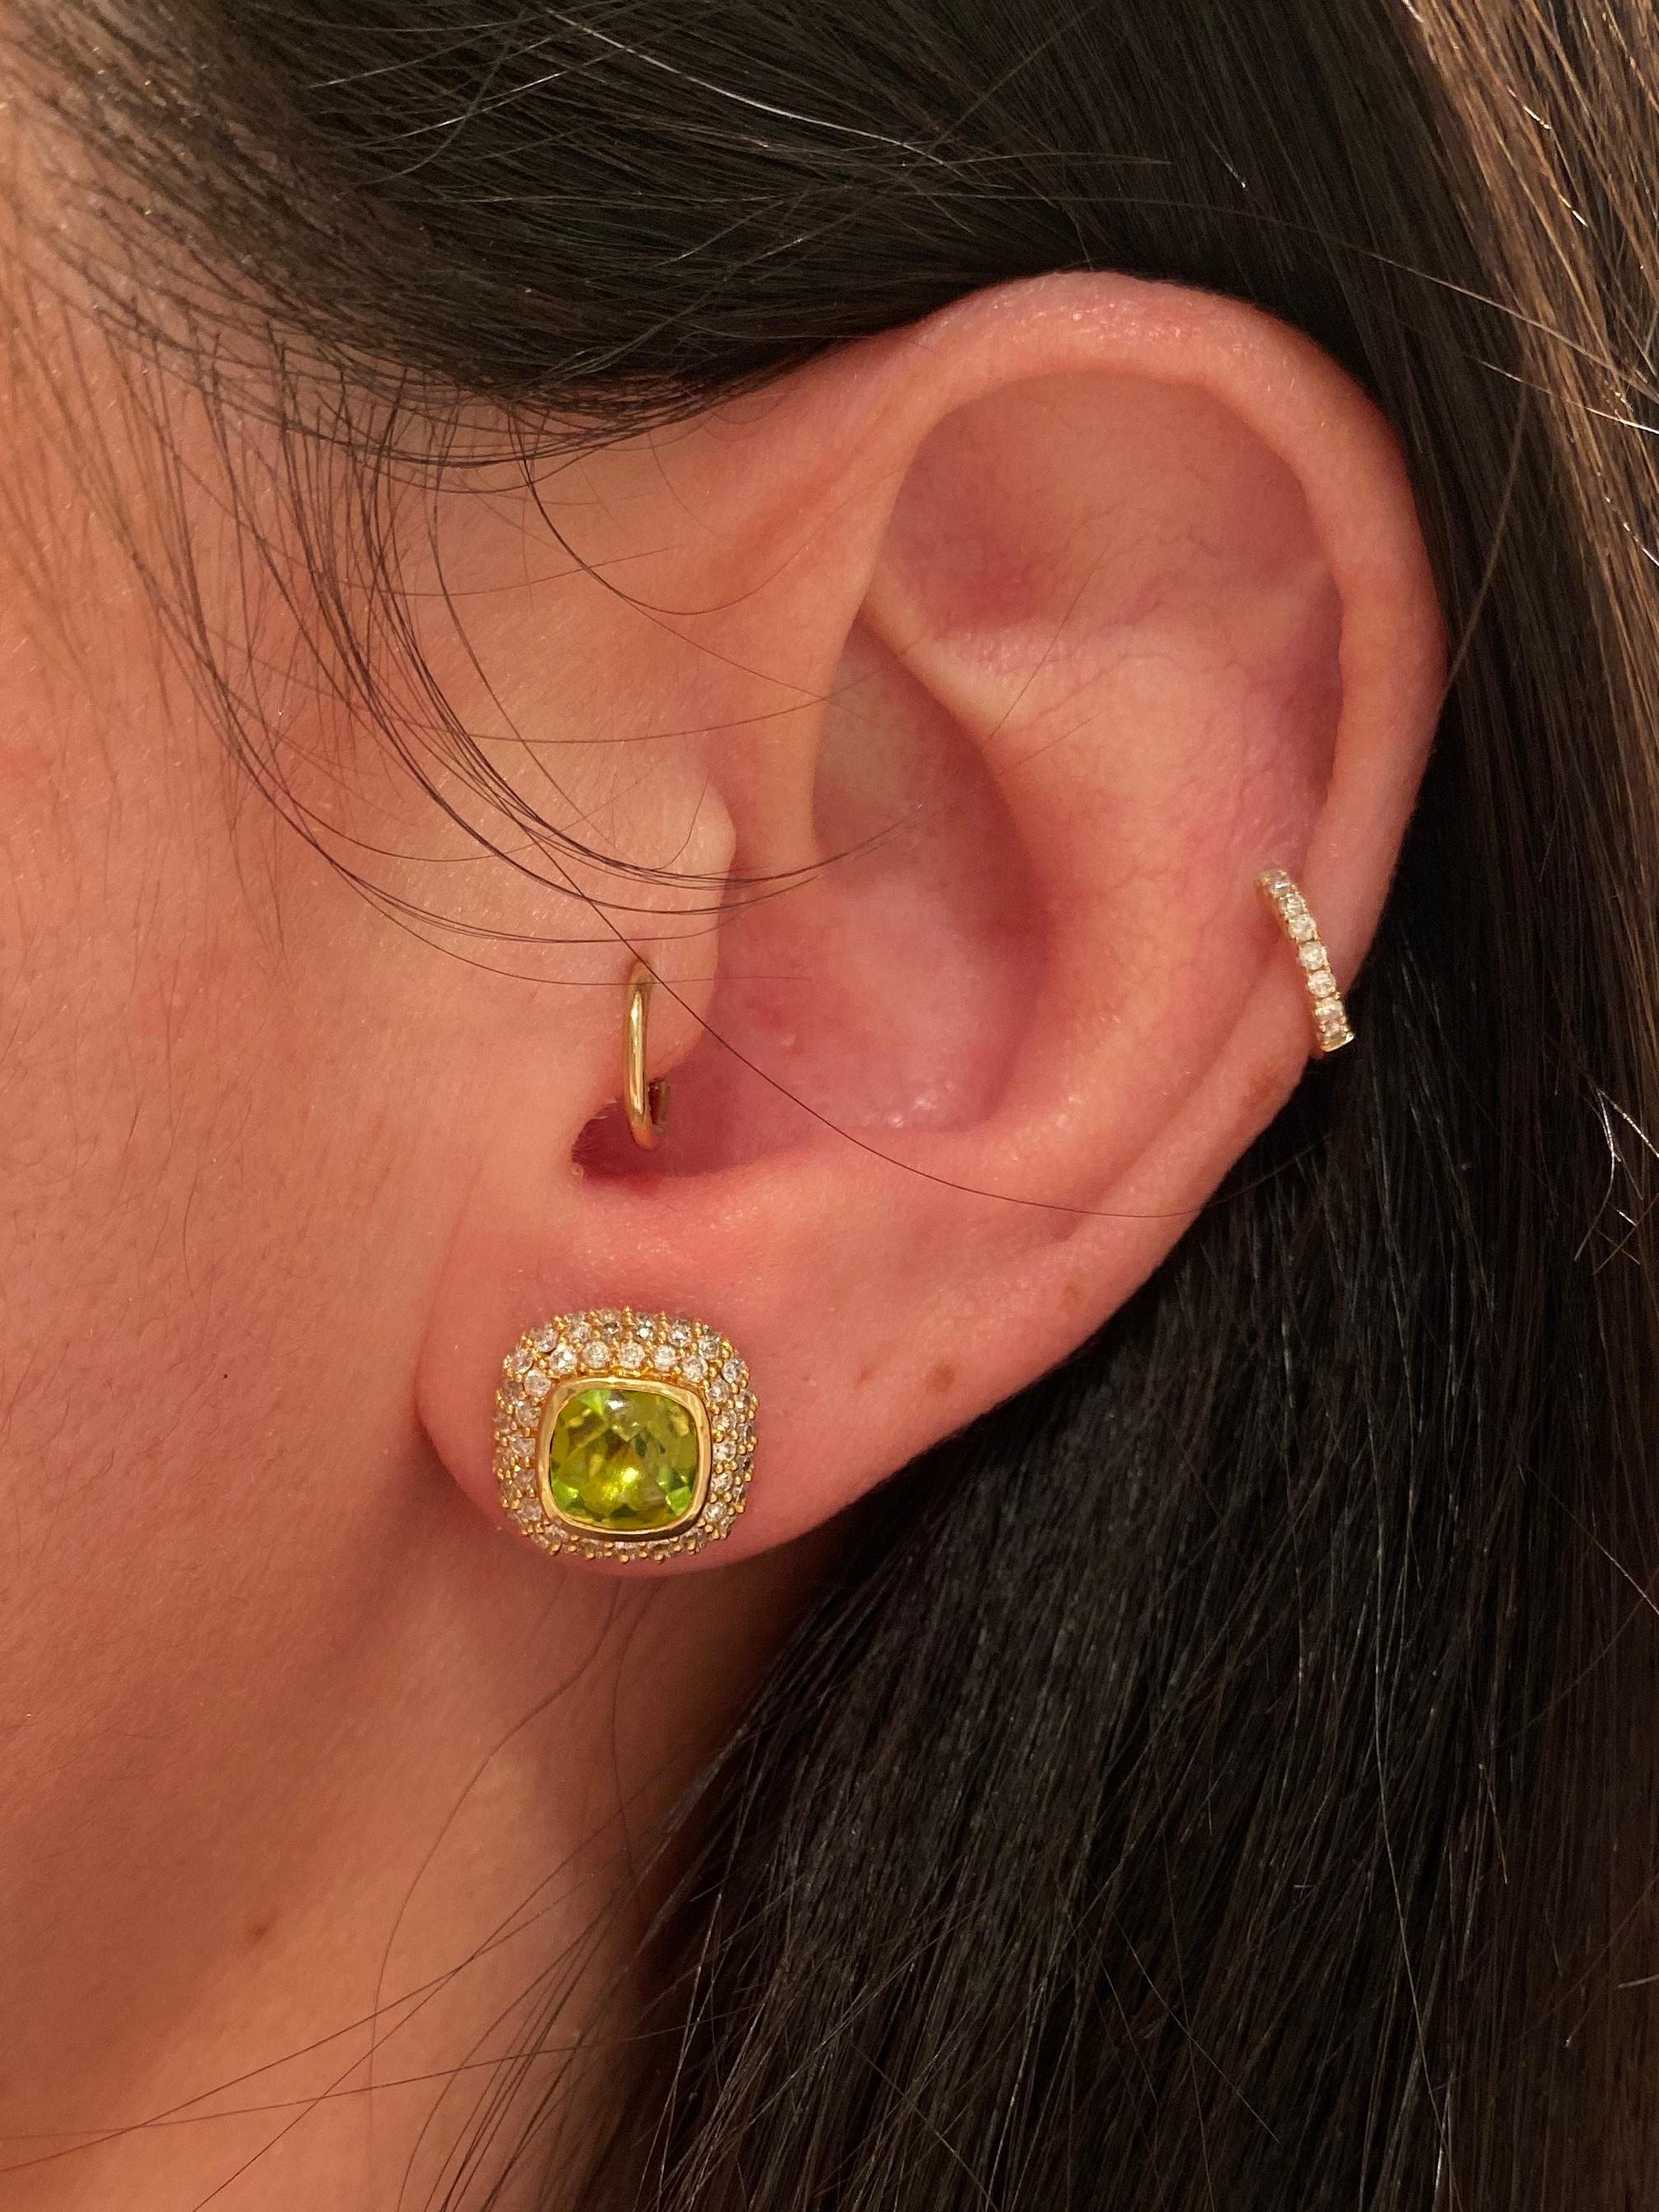 18 karat yellow gold diamond and peridot stud earrings. 136 diamonds for 0.97 carats, and 2 peridot for 2.23 carats. 